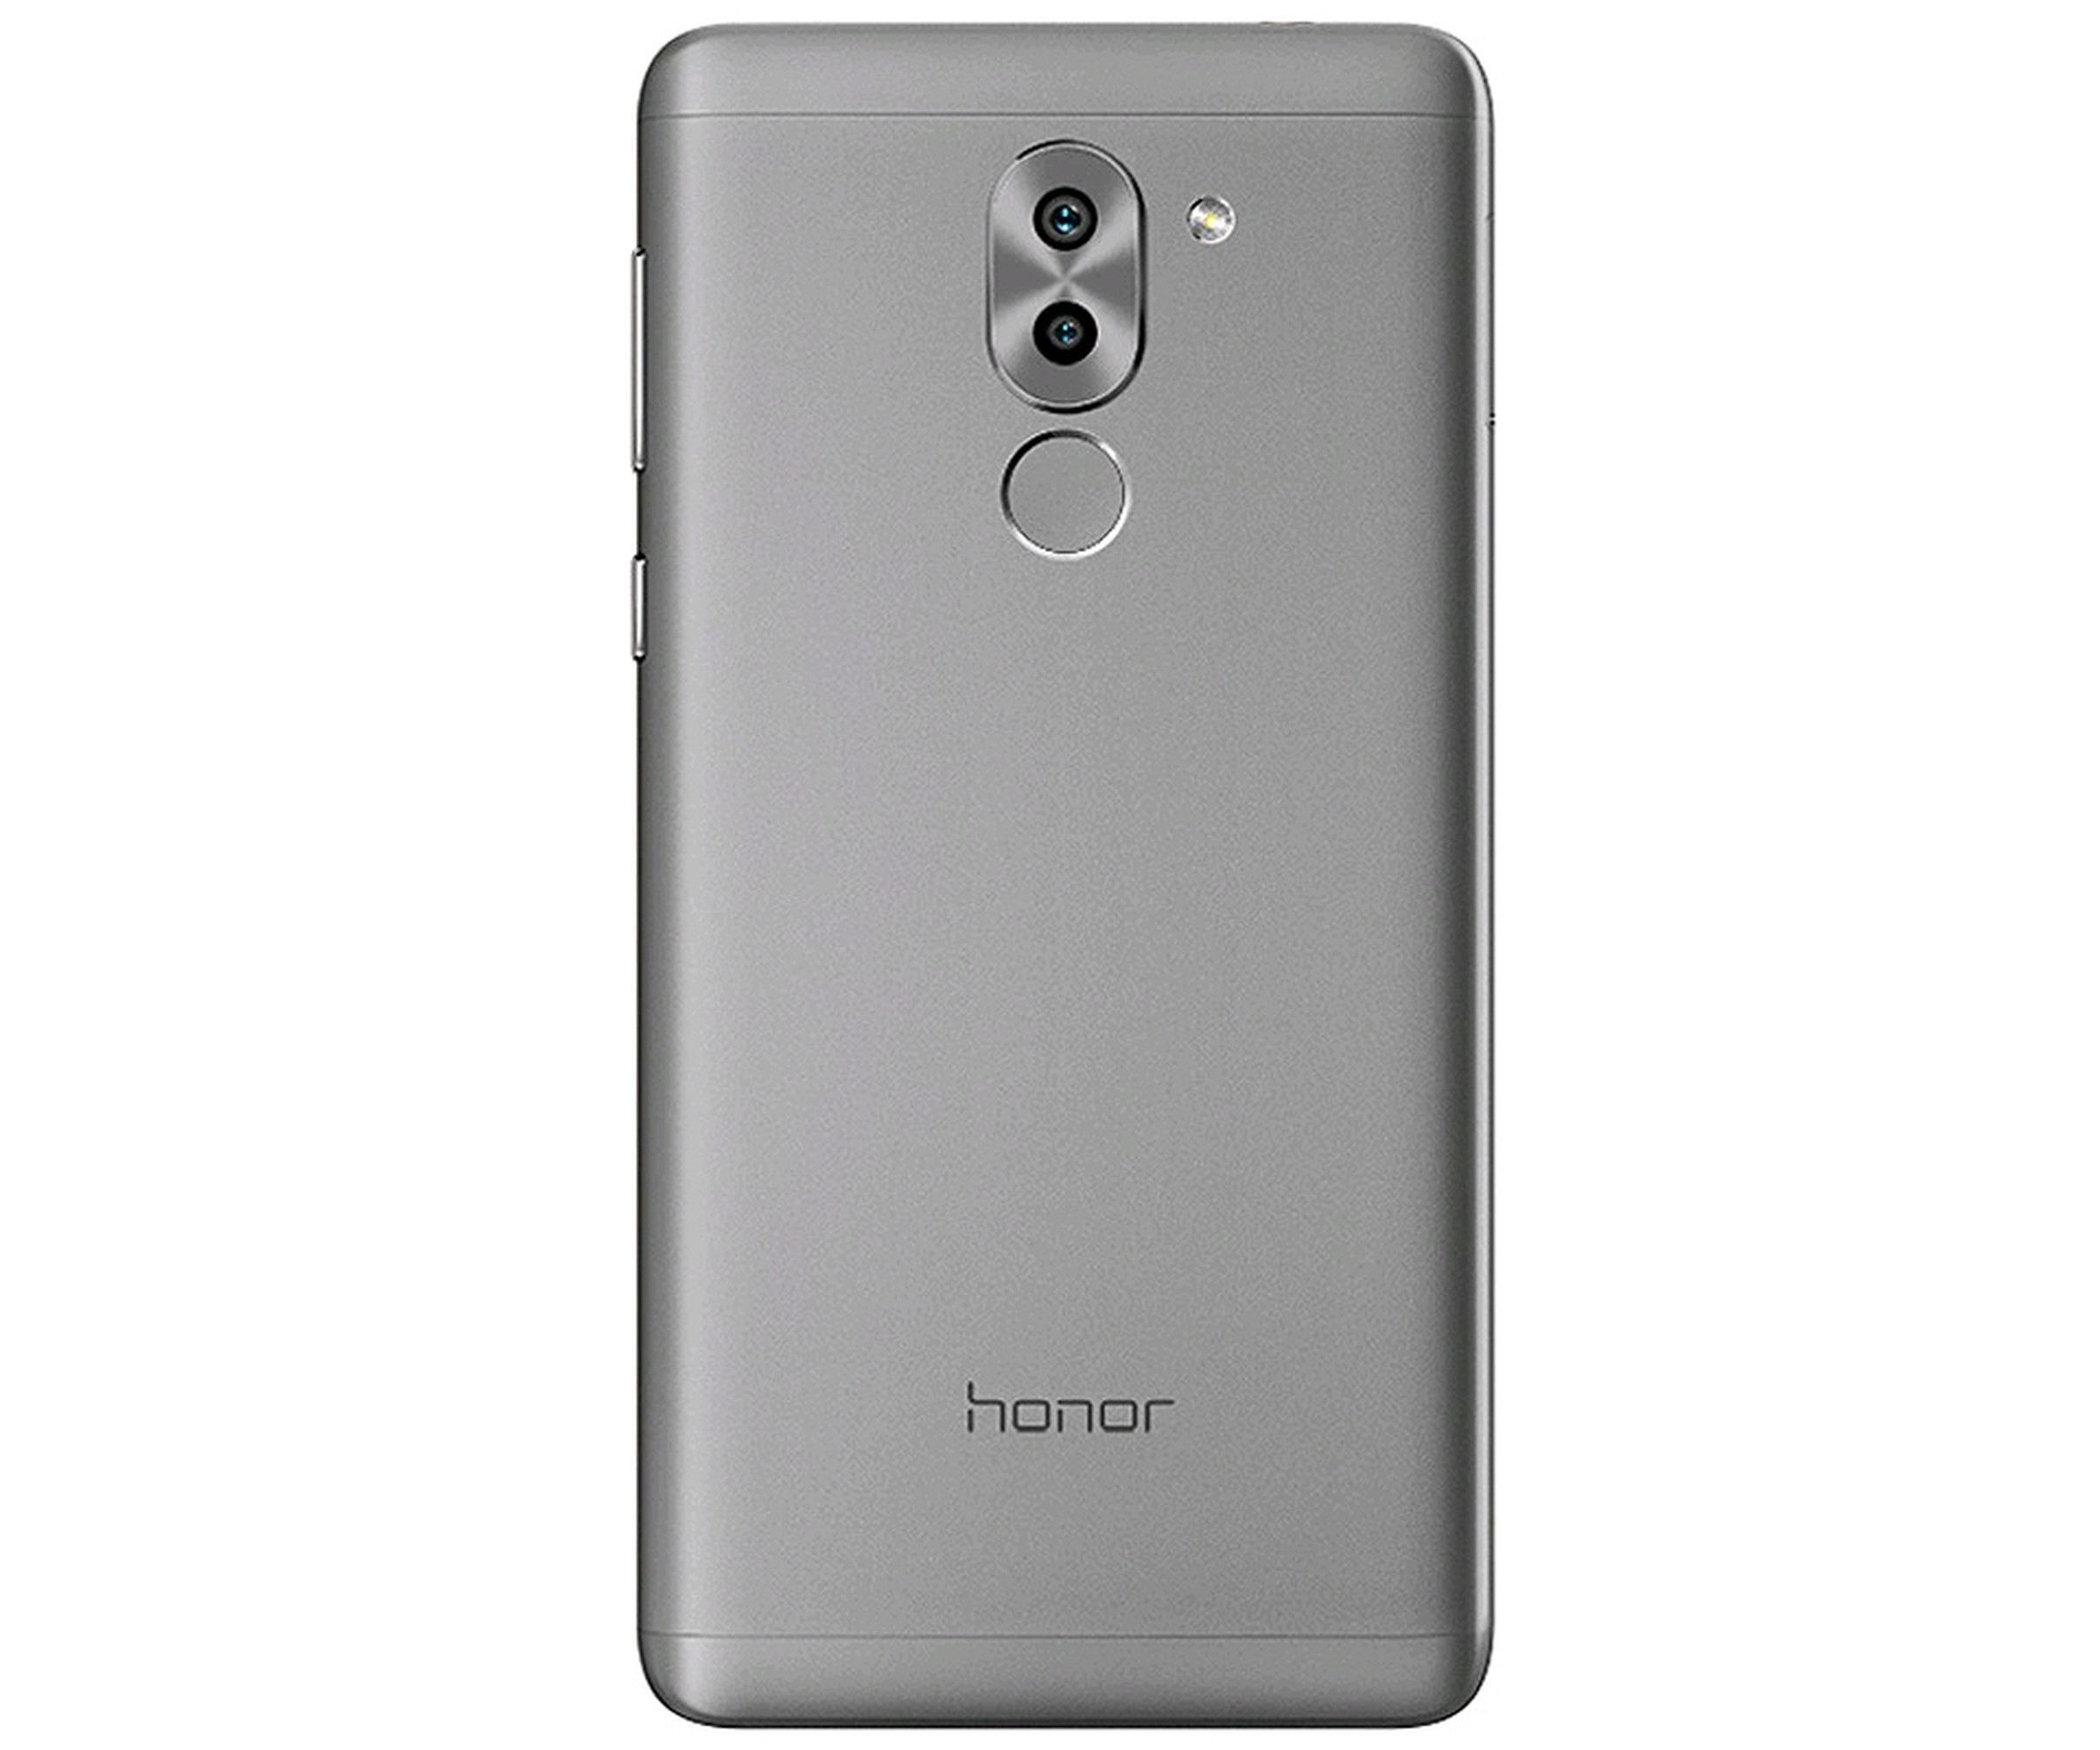 Huawei Honor 6X 14 cm (5.5 Zoll) 4 GB 64 GB Dual-SIM 4G Grau 3340 mAh